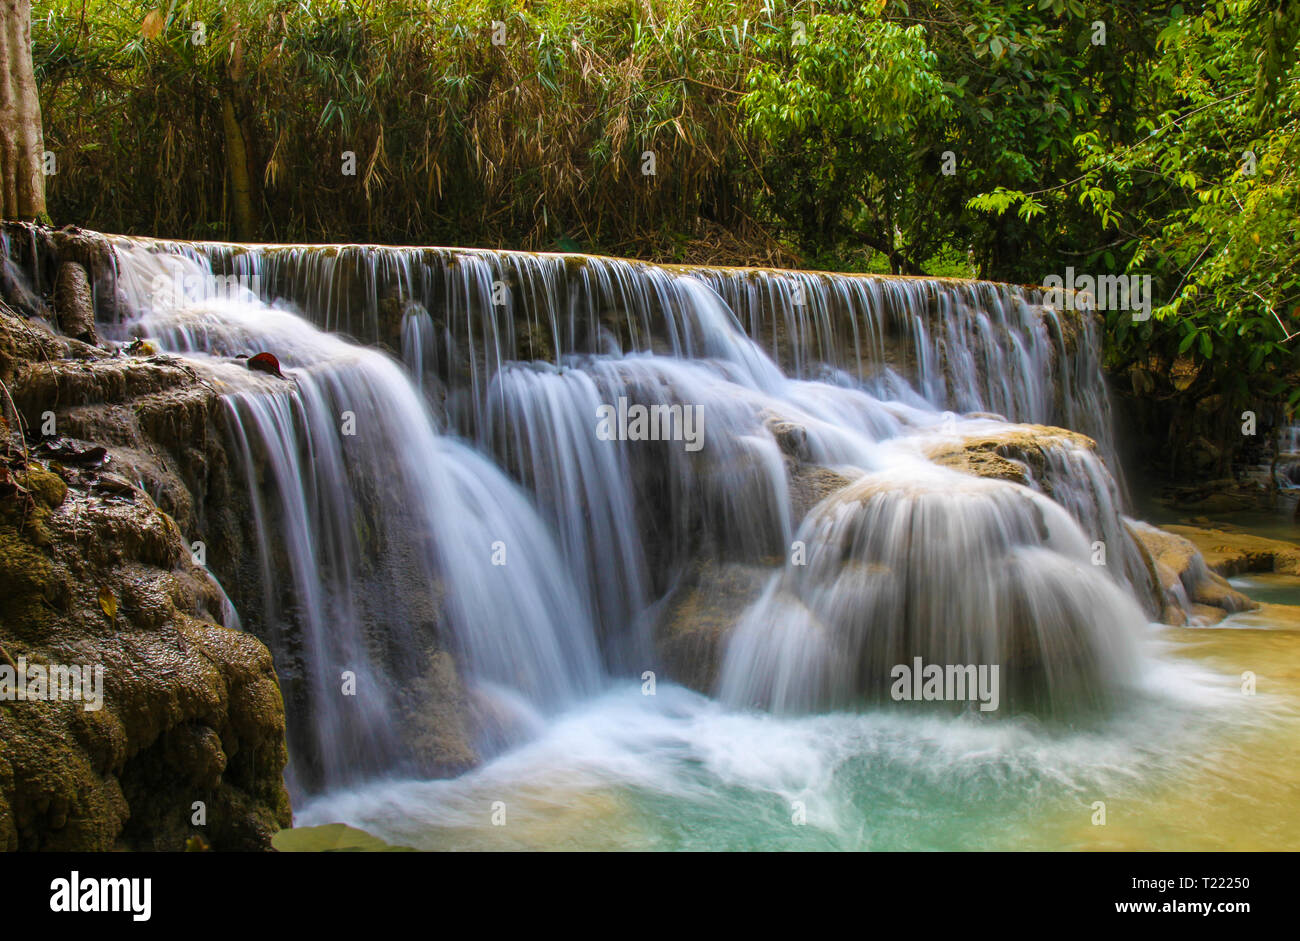 Wasser fließt über die Kaskaden am Kuang Si Wasserfall außerhalb von Luang Prabang in Laos. Dieser Wasserfall und stream sind beliebtes Ziel zum Abkühlen. Stockfoto